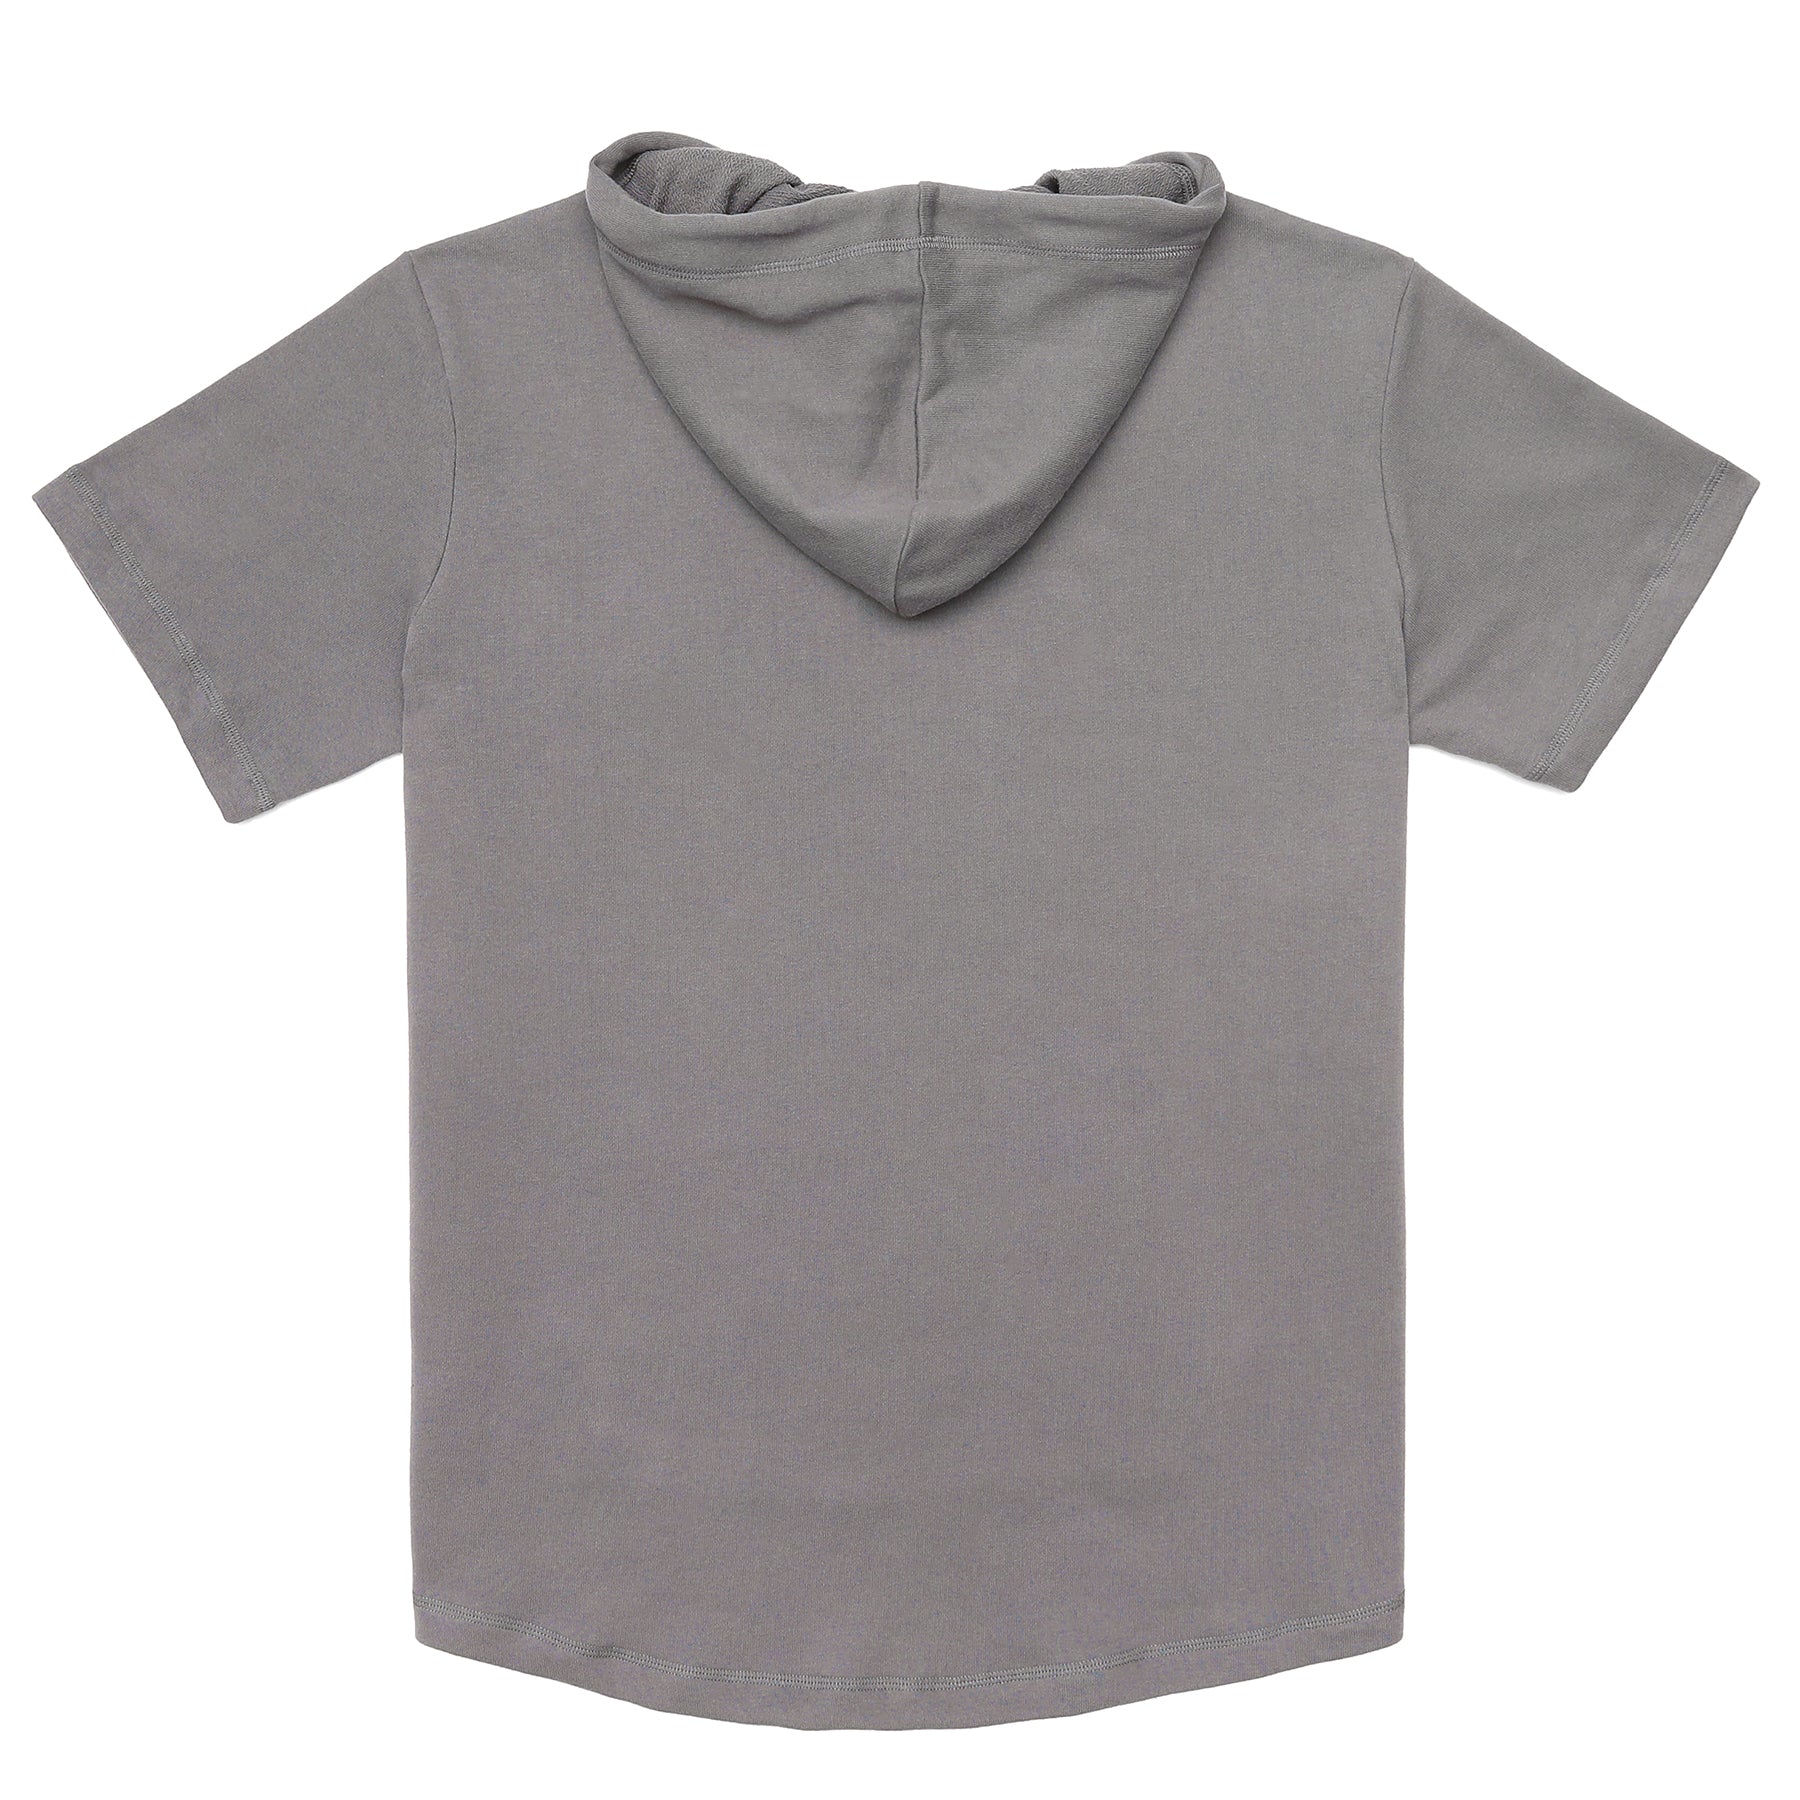 Men's Hoodies short-sleeved hooded sweatshirt #0618